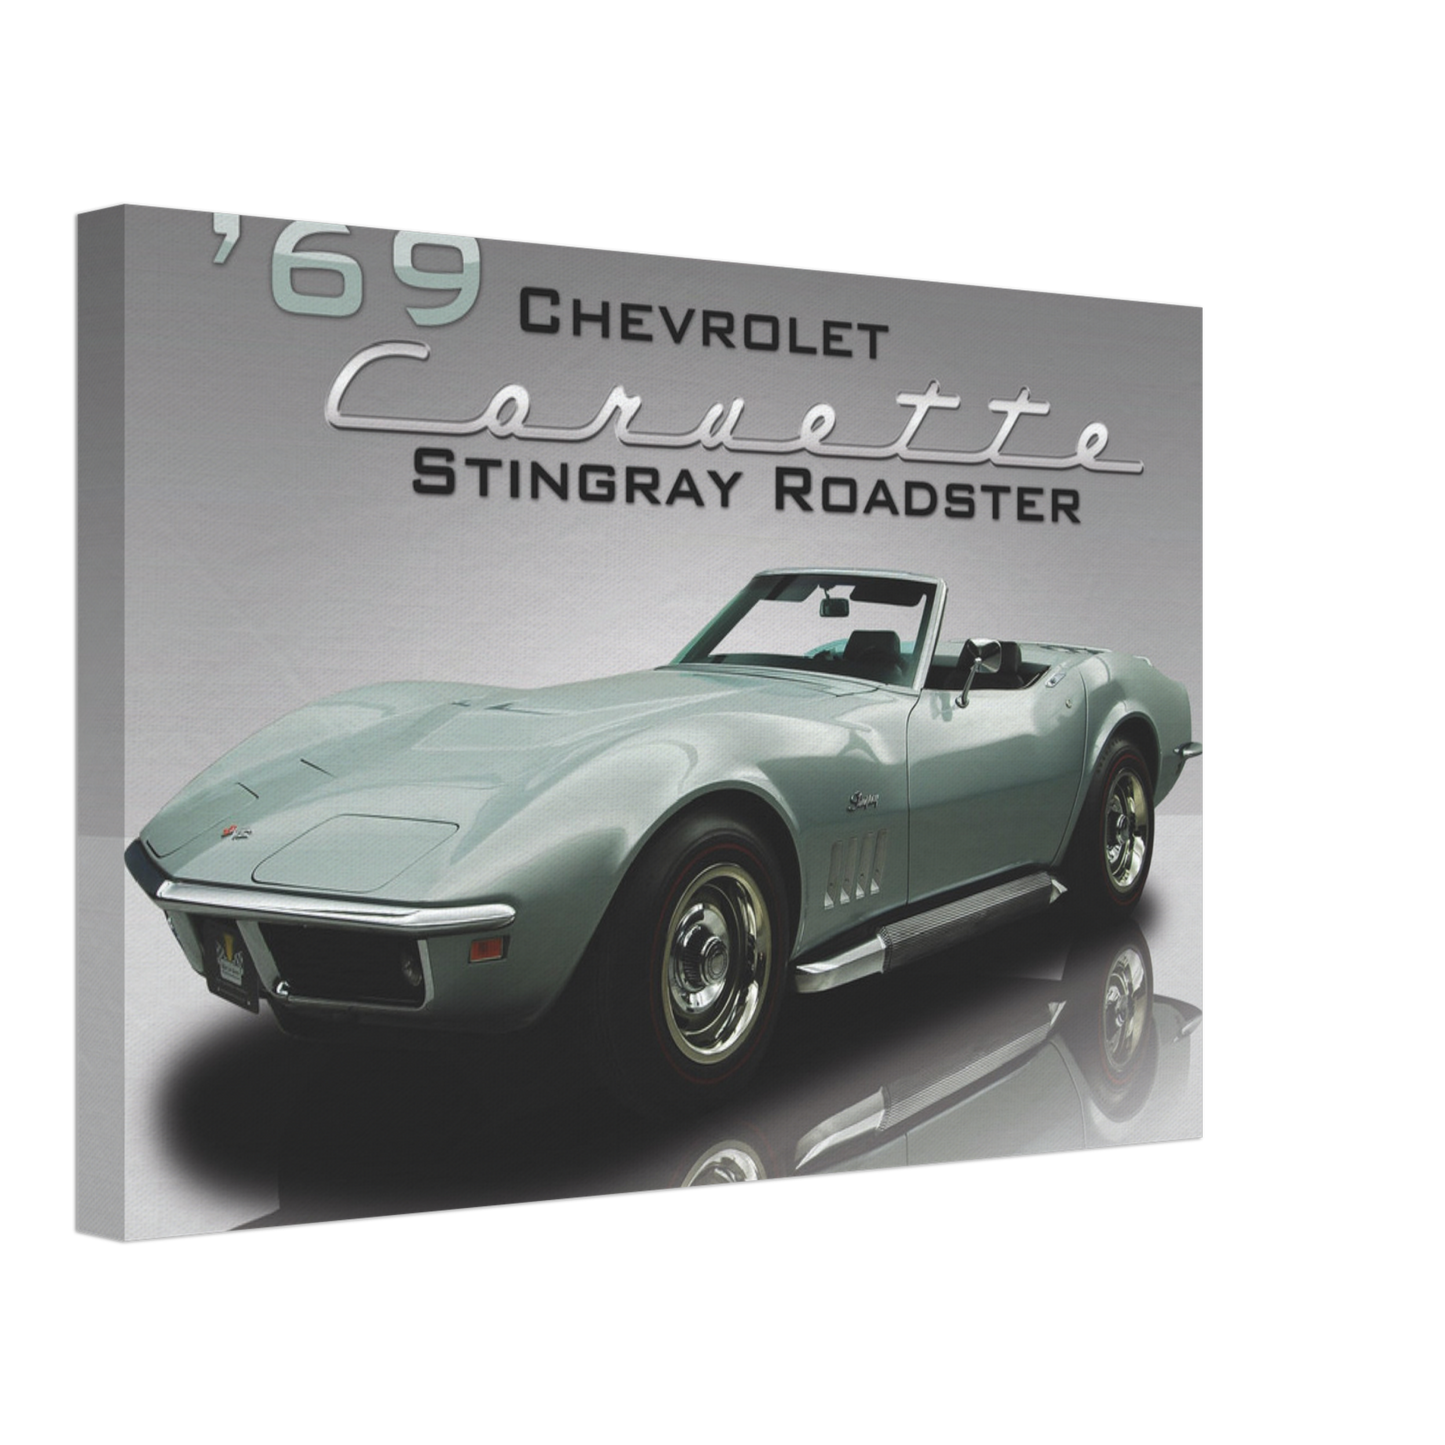 1969 Chevrolet Corvette Stingray Roadster